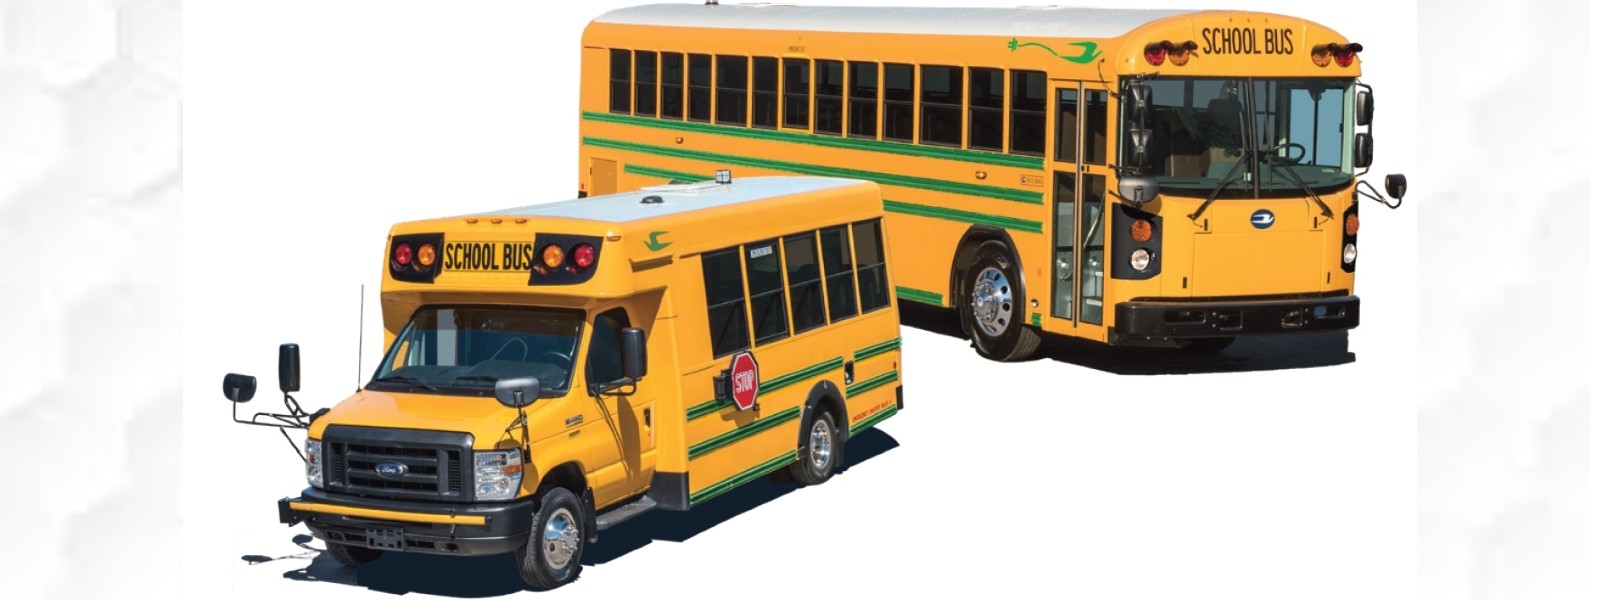 Grant diesel subsidy for school vans: CTU